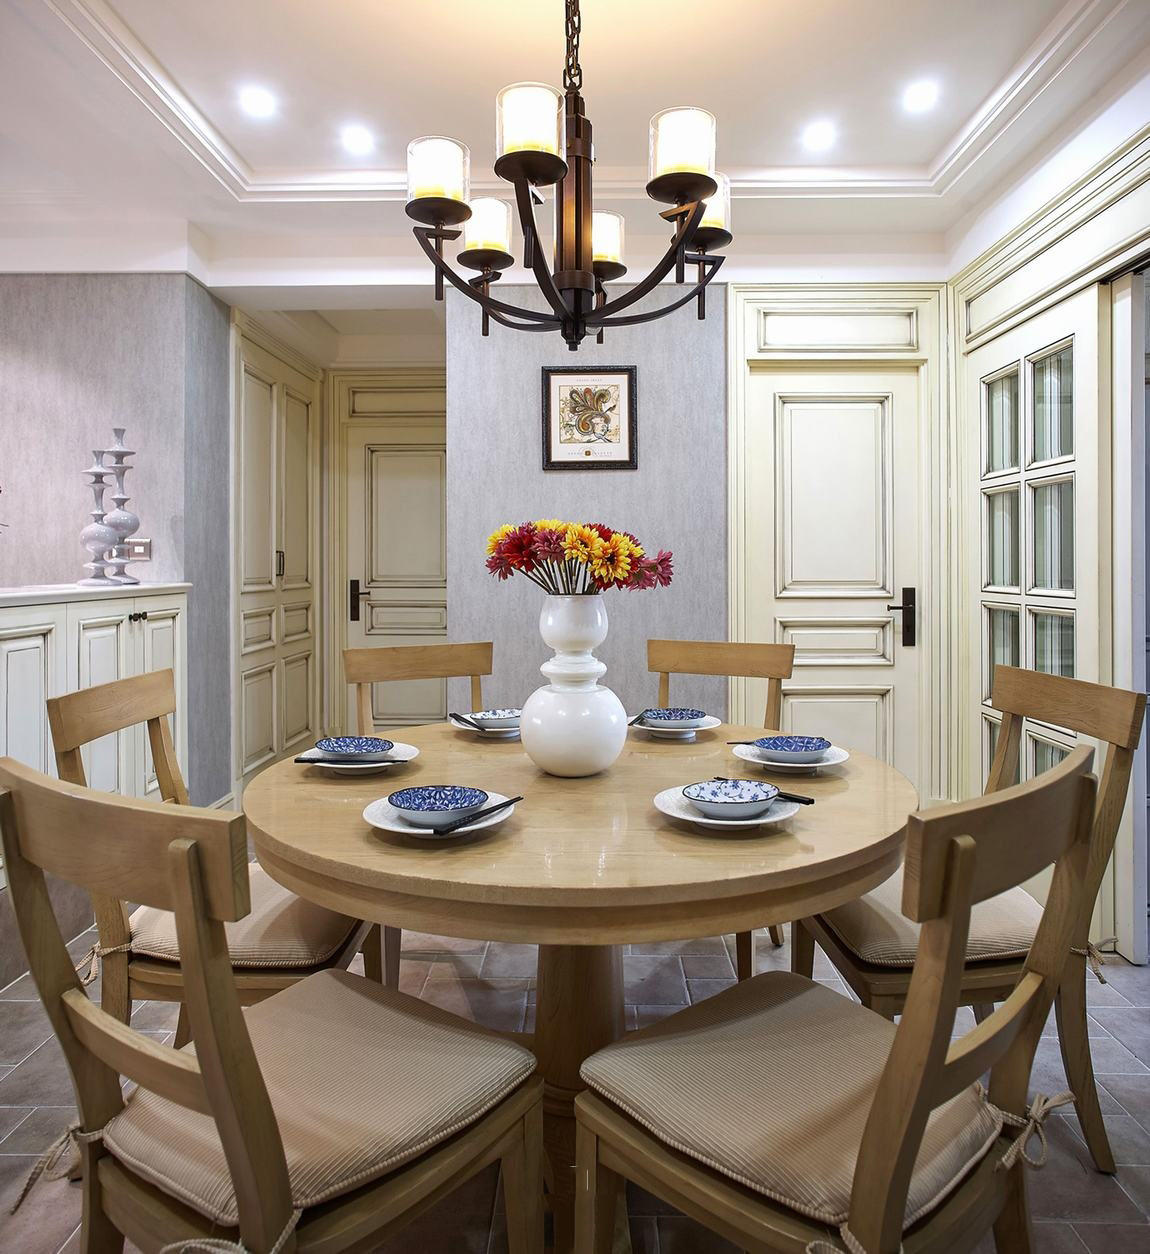 素雅美式新古典风餐厅六人圆桌设计装修图简约二居装修效果图厨房效果